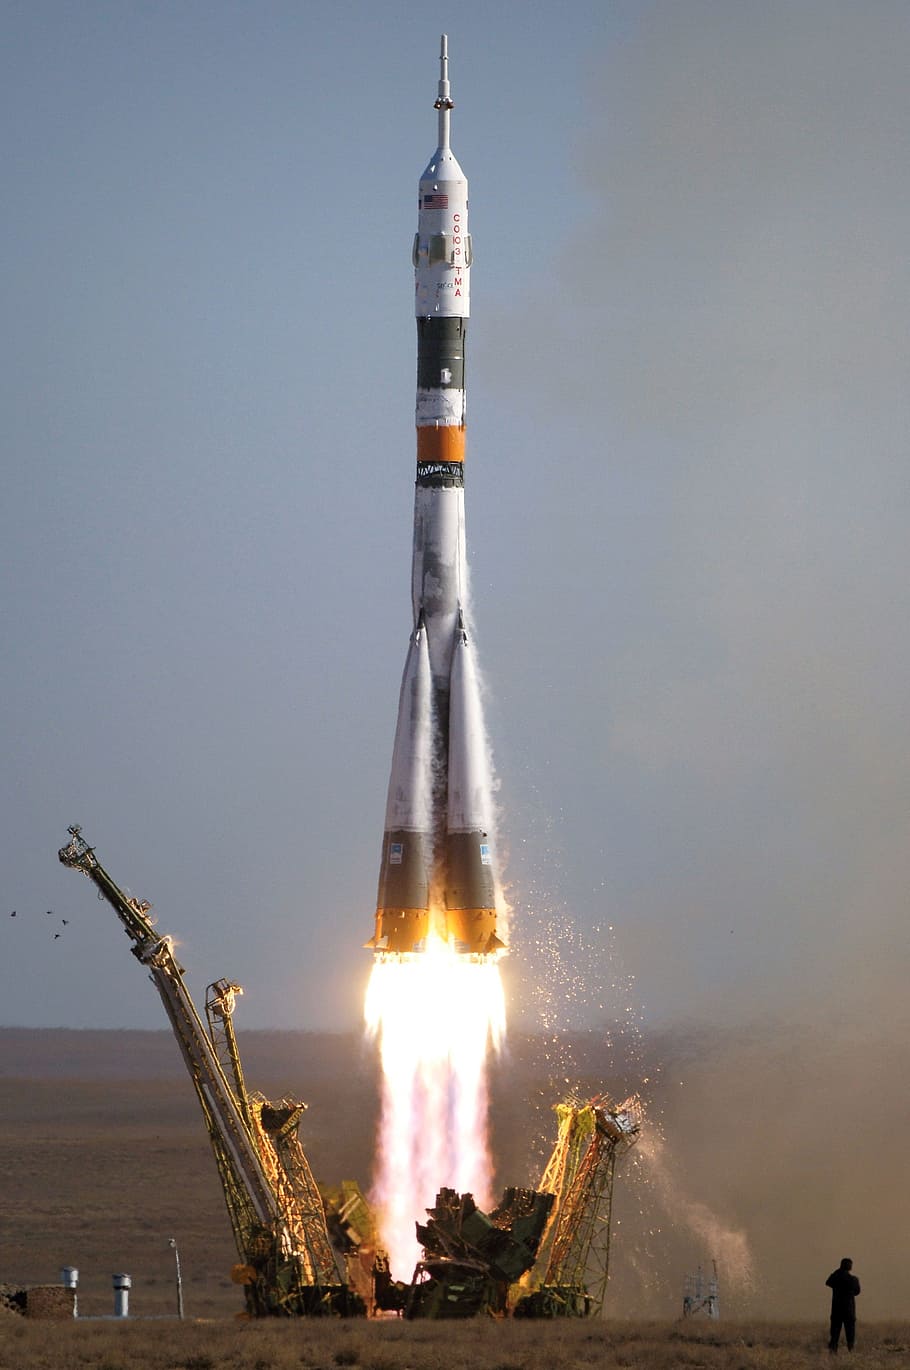 スペースシャトル, ソユーズ, ロケット打ち上げ, ロケット, 離陸, 宇宙旅行, ドライブ, ブースト, 加速, 重力